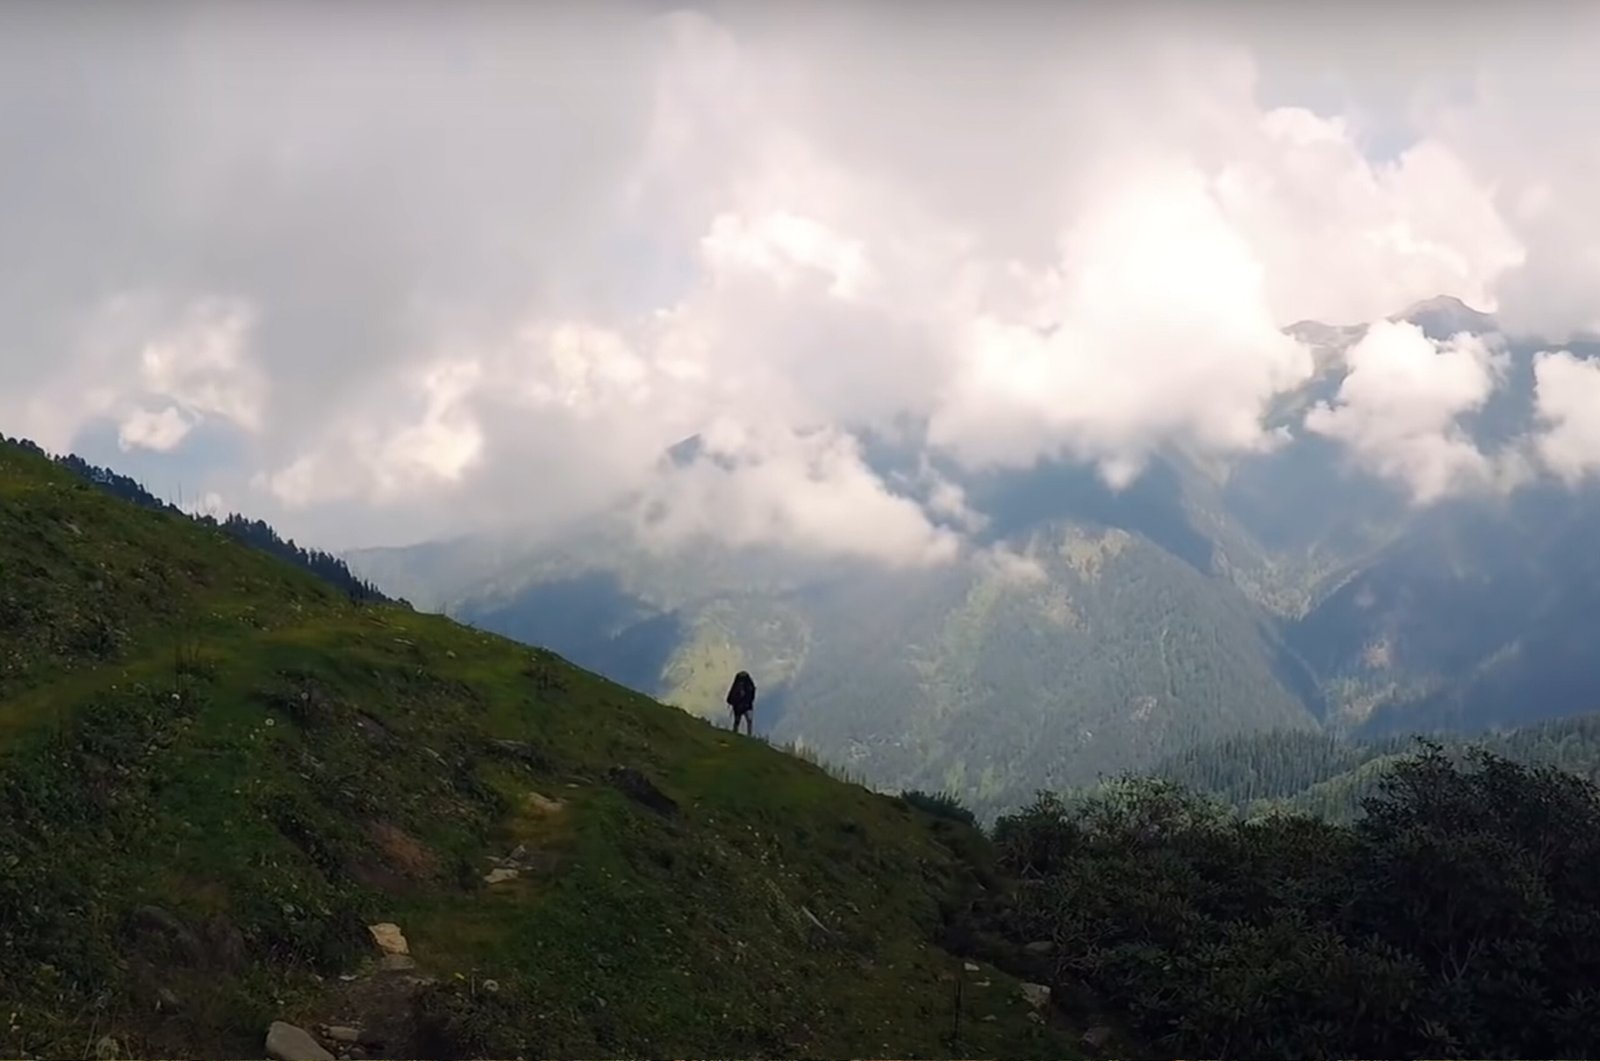 Chandrakhani Pass Trek, Himachal Pradesh